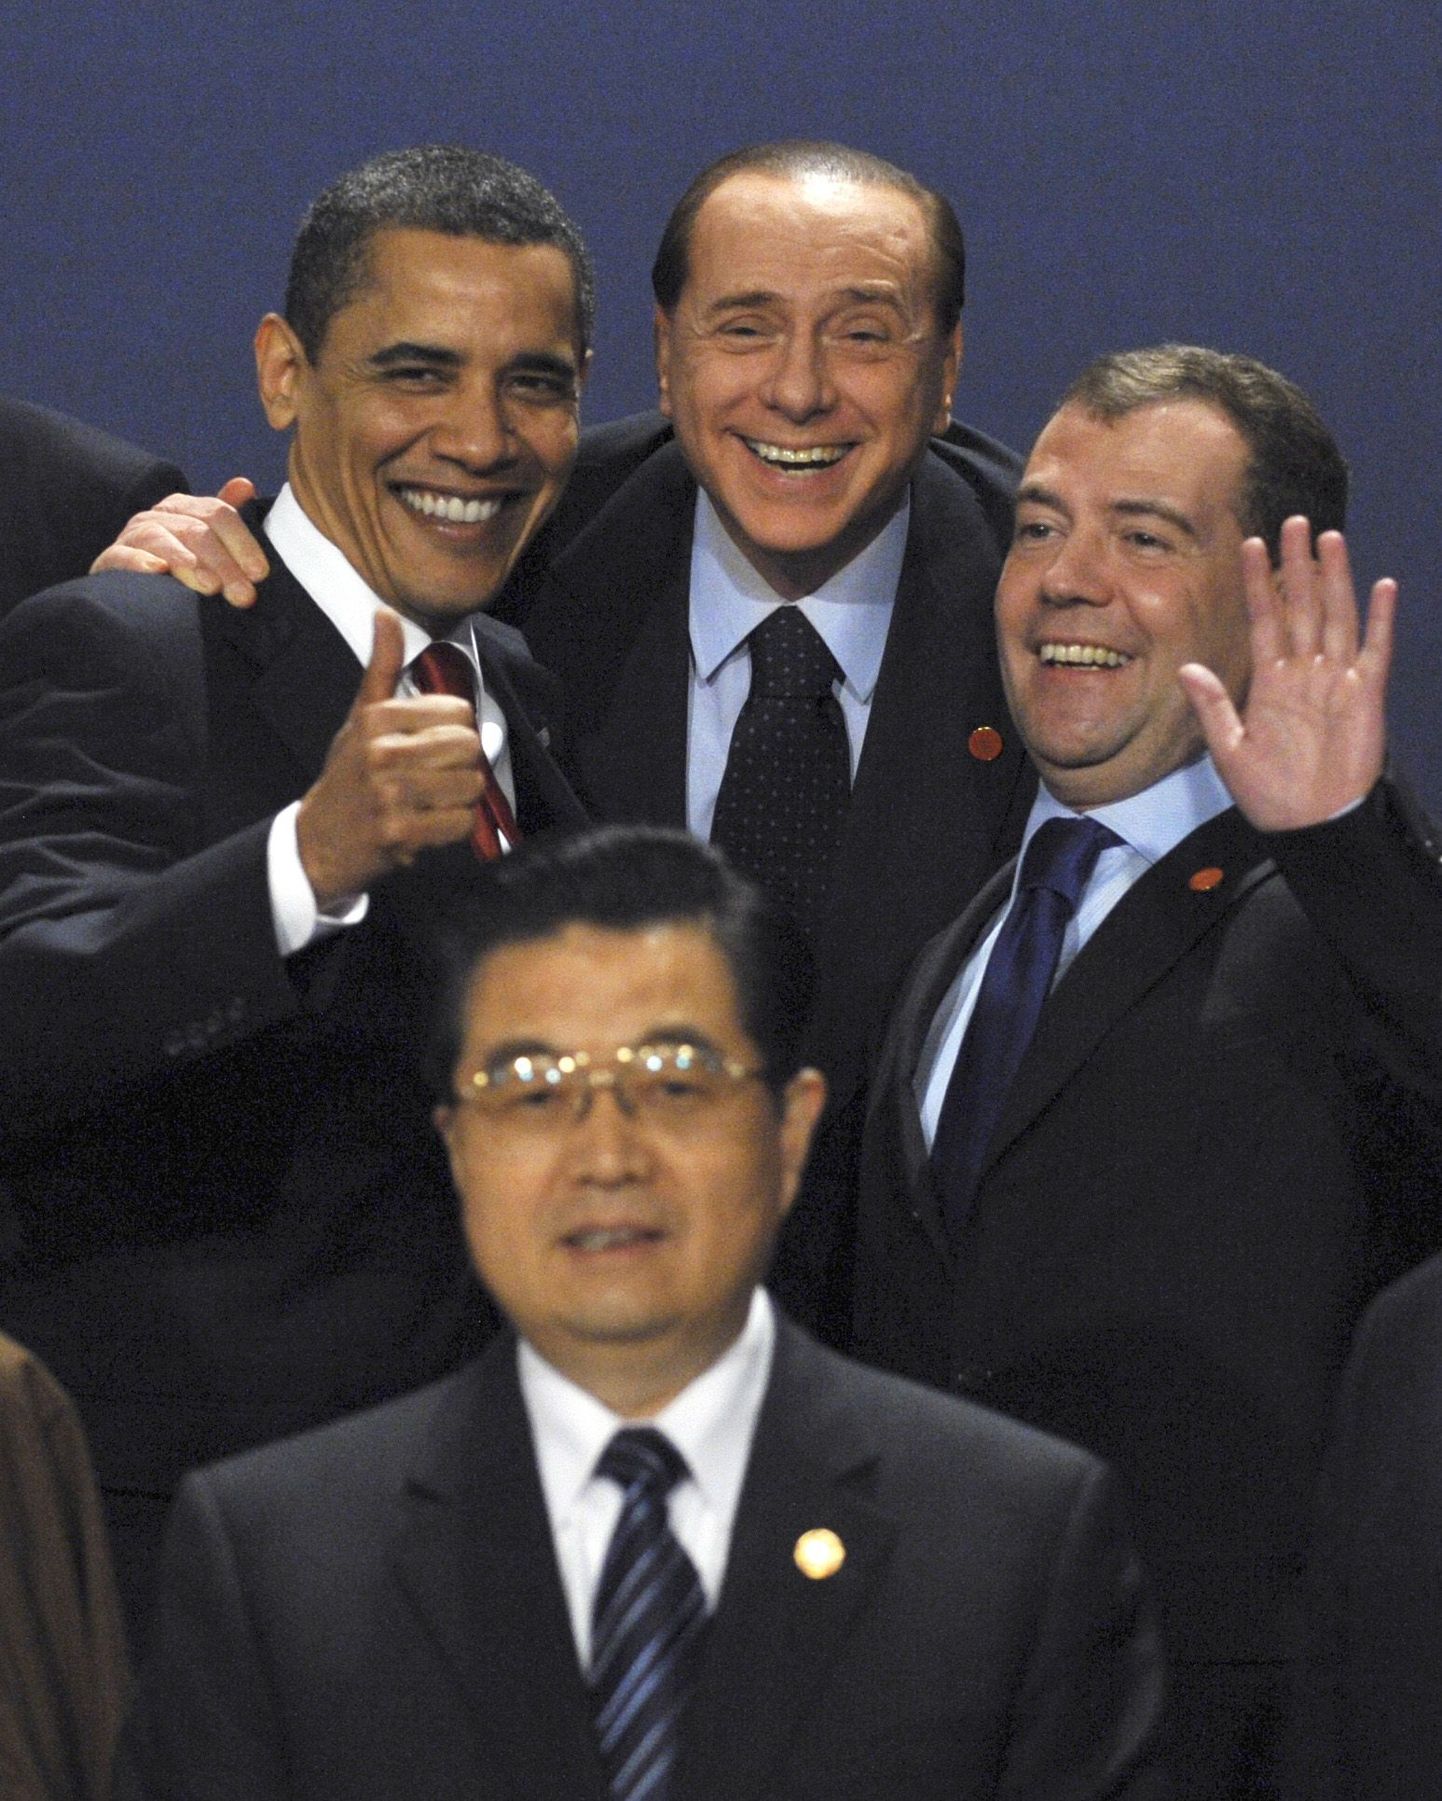 Hiina presidendi Hu Jintao selja taga seisvad Barack Obama (vasakult), Silvio Berlusconi ja Dmitri Medvedev täna G20 riigijuhtide ühisfotol.